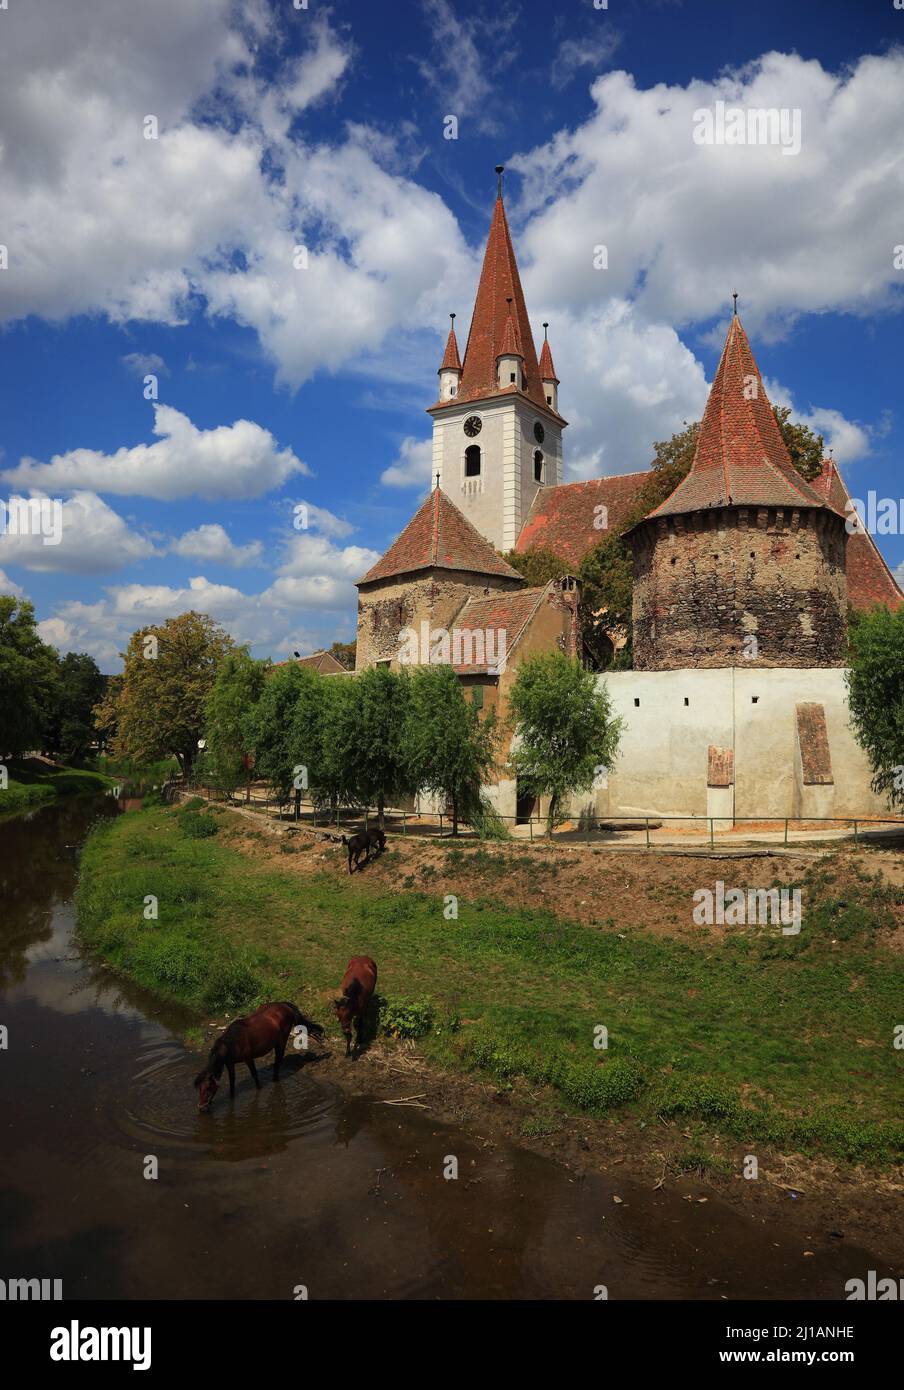 Kirchenburg Großau, erbaut 1498. Cristian, dt. Großau oder Grossau, sächsisch: Grißau, ist eine Ortschaft in Siebenbürgen, Rumänien  /  The fortified Stock Photo